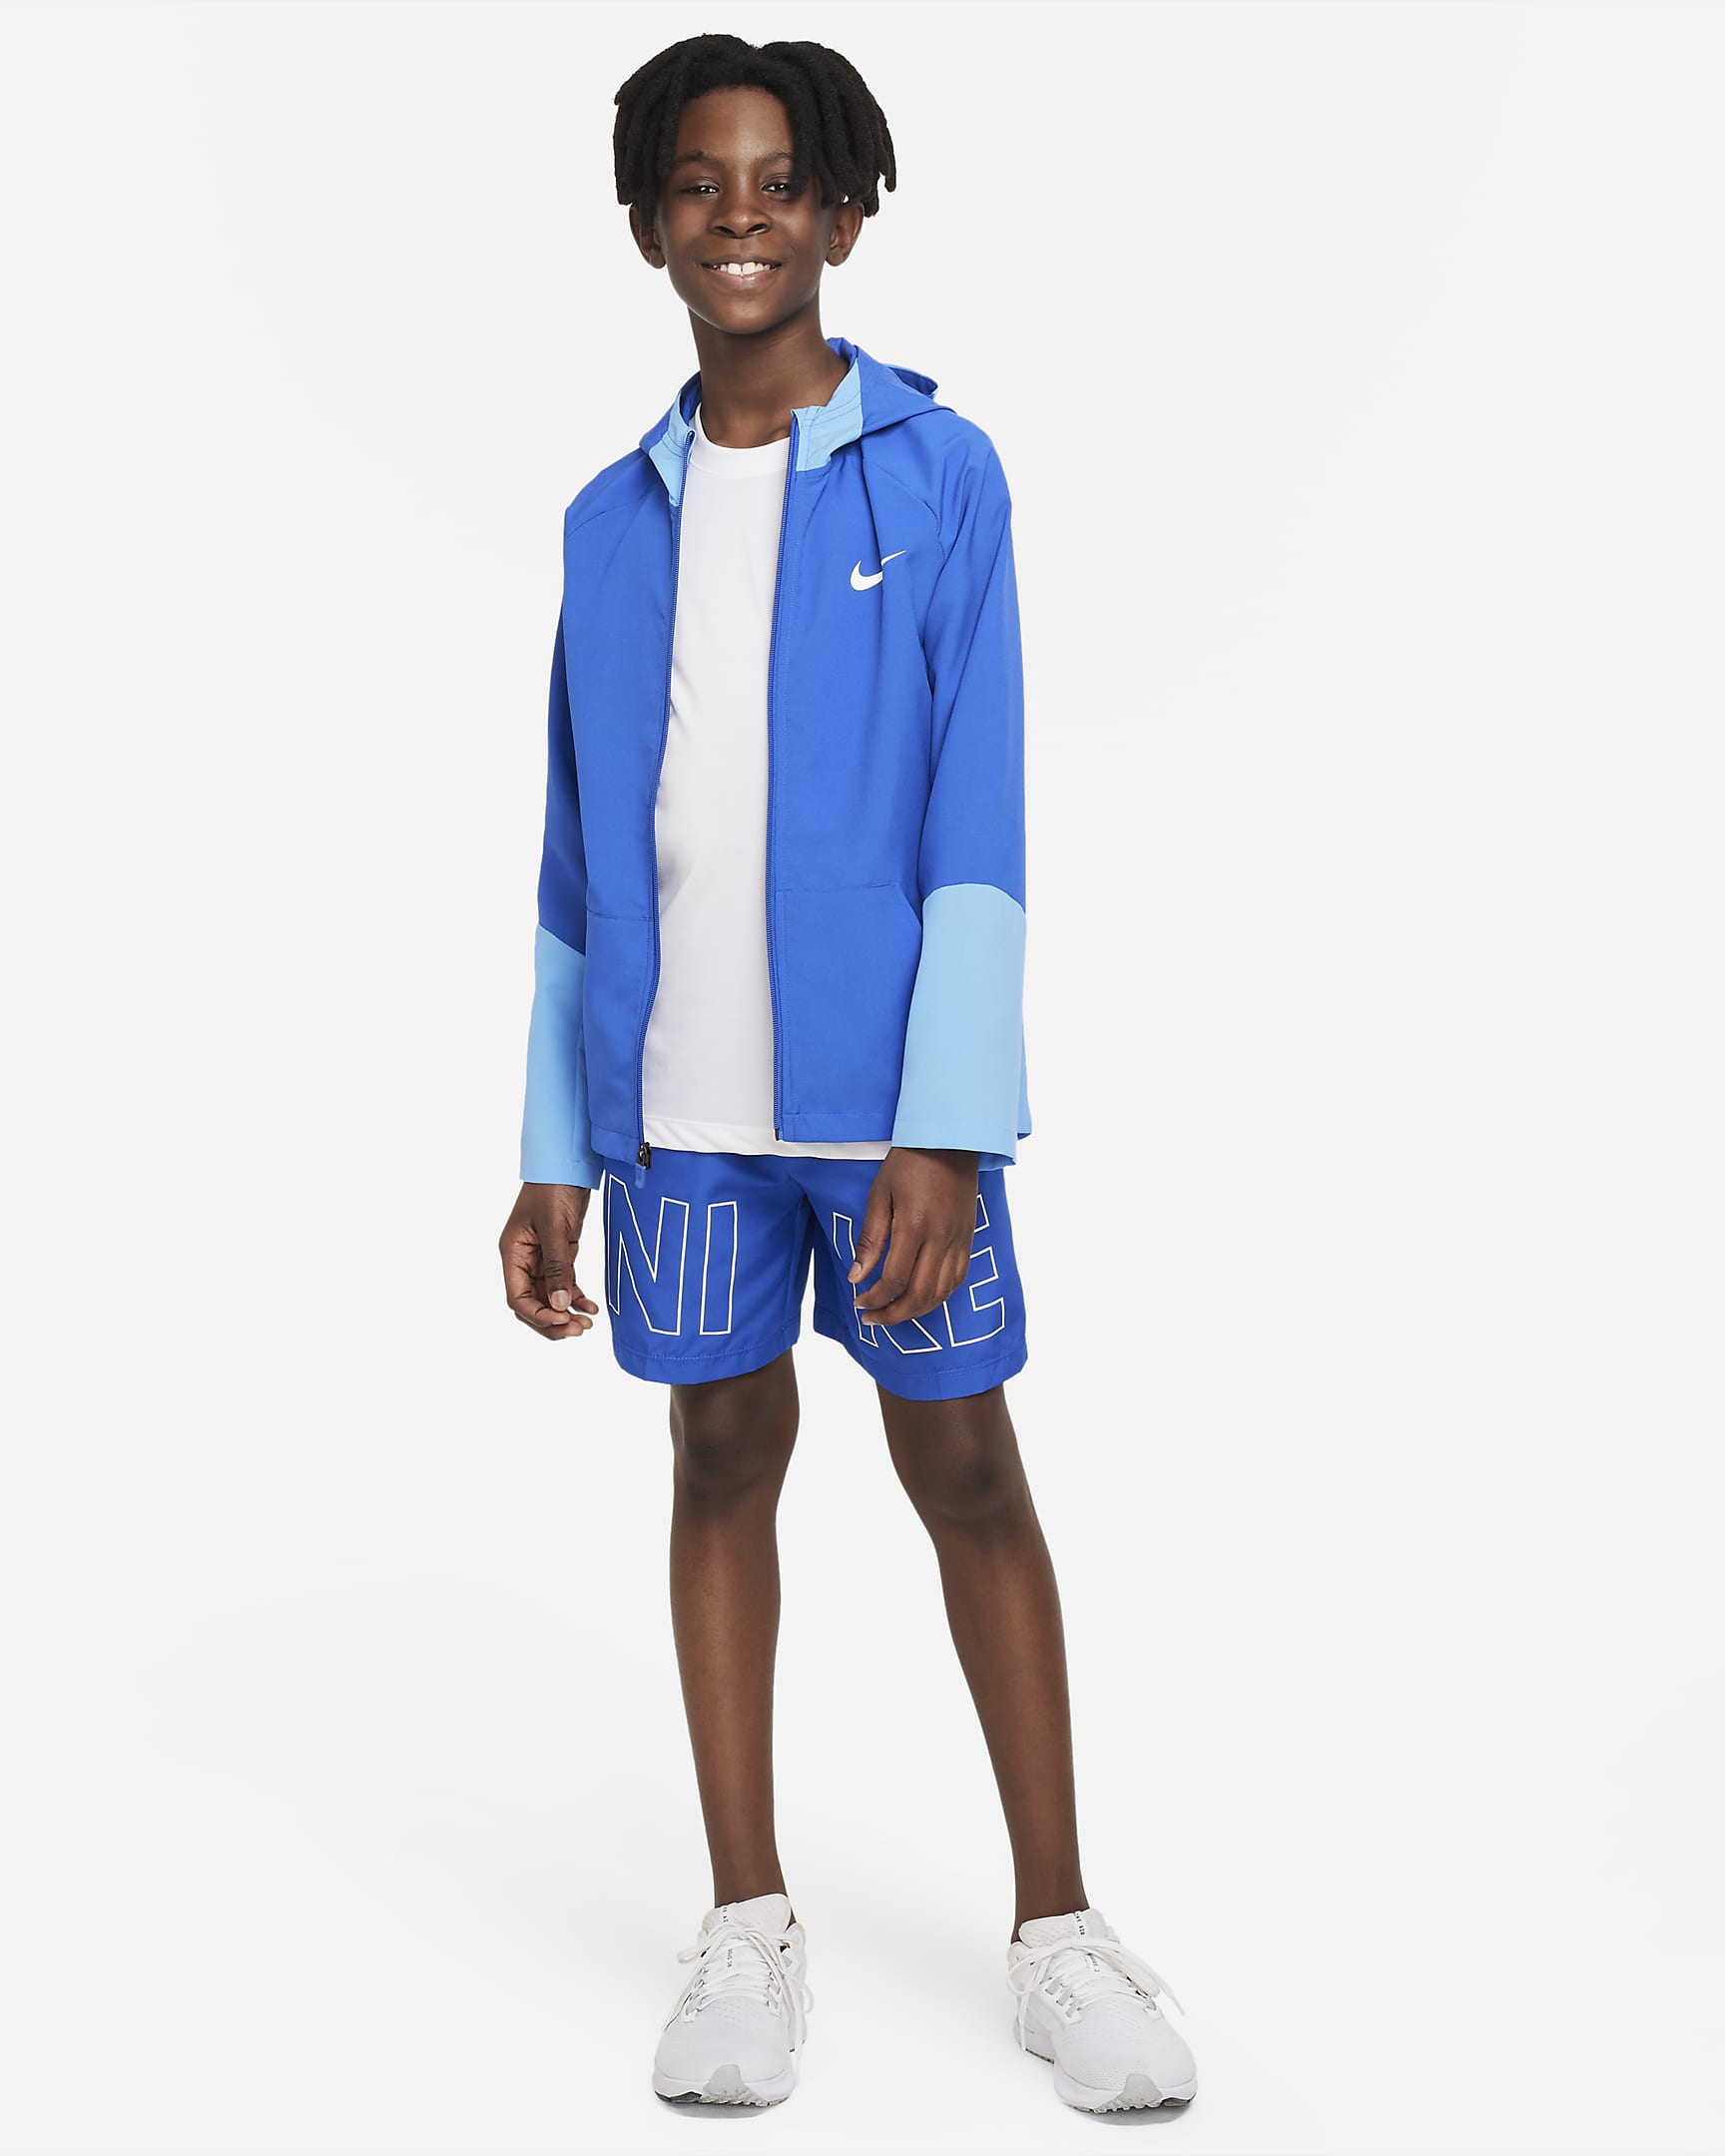 Nike Multi Big Kids' Woven Training Shorts. Nike.com